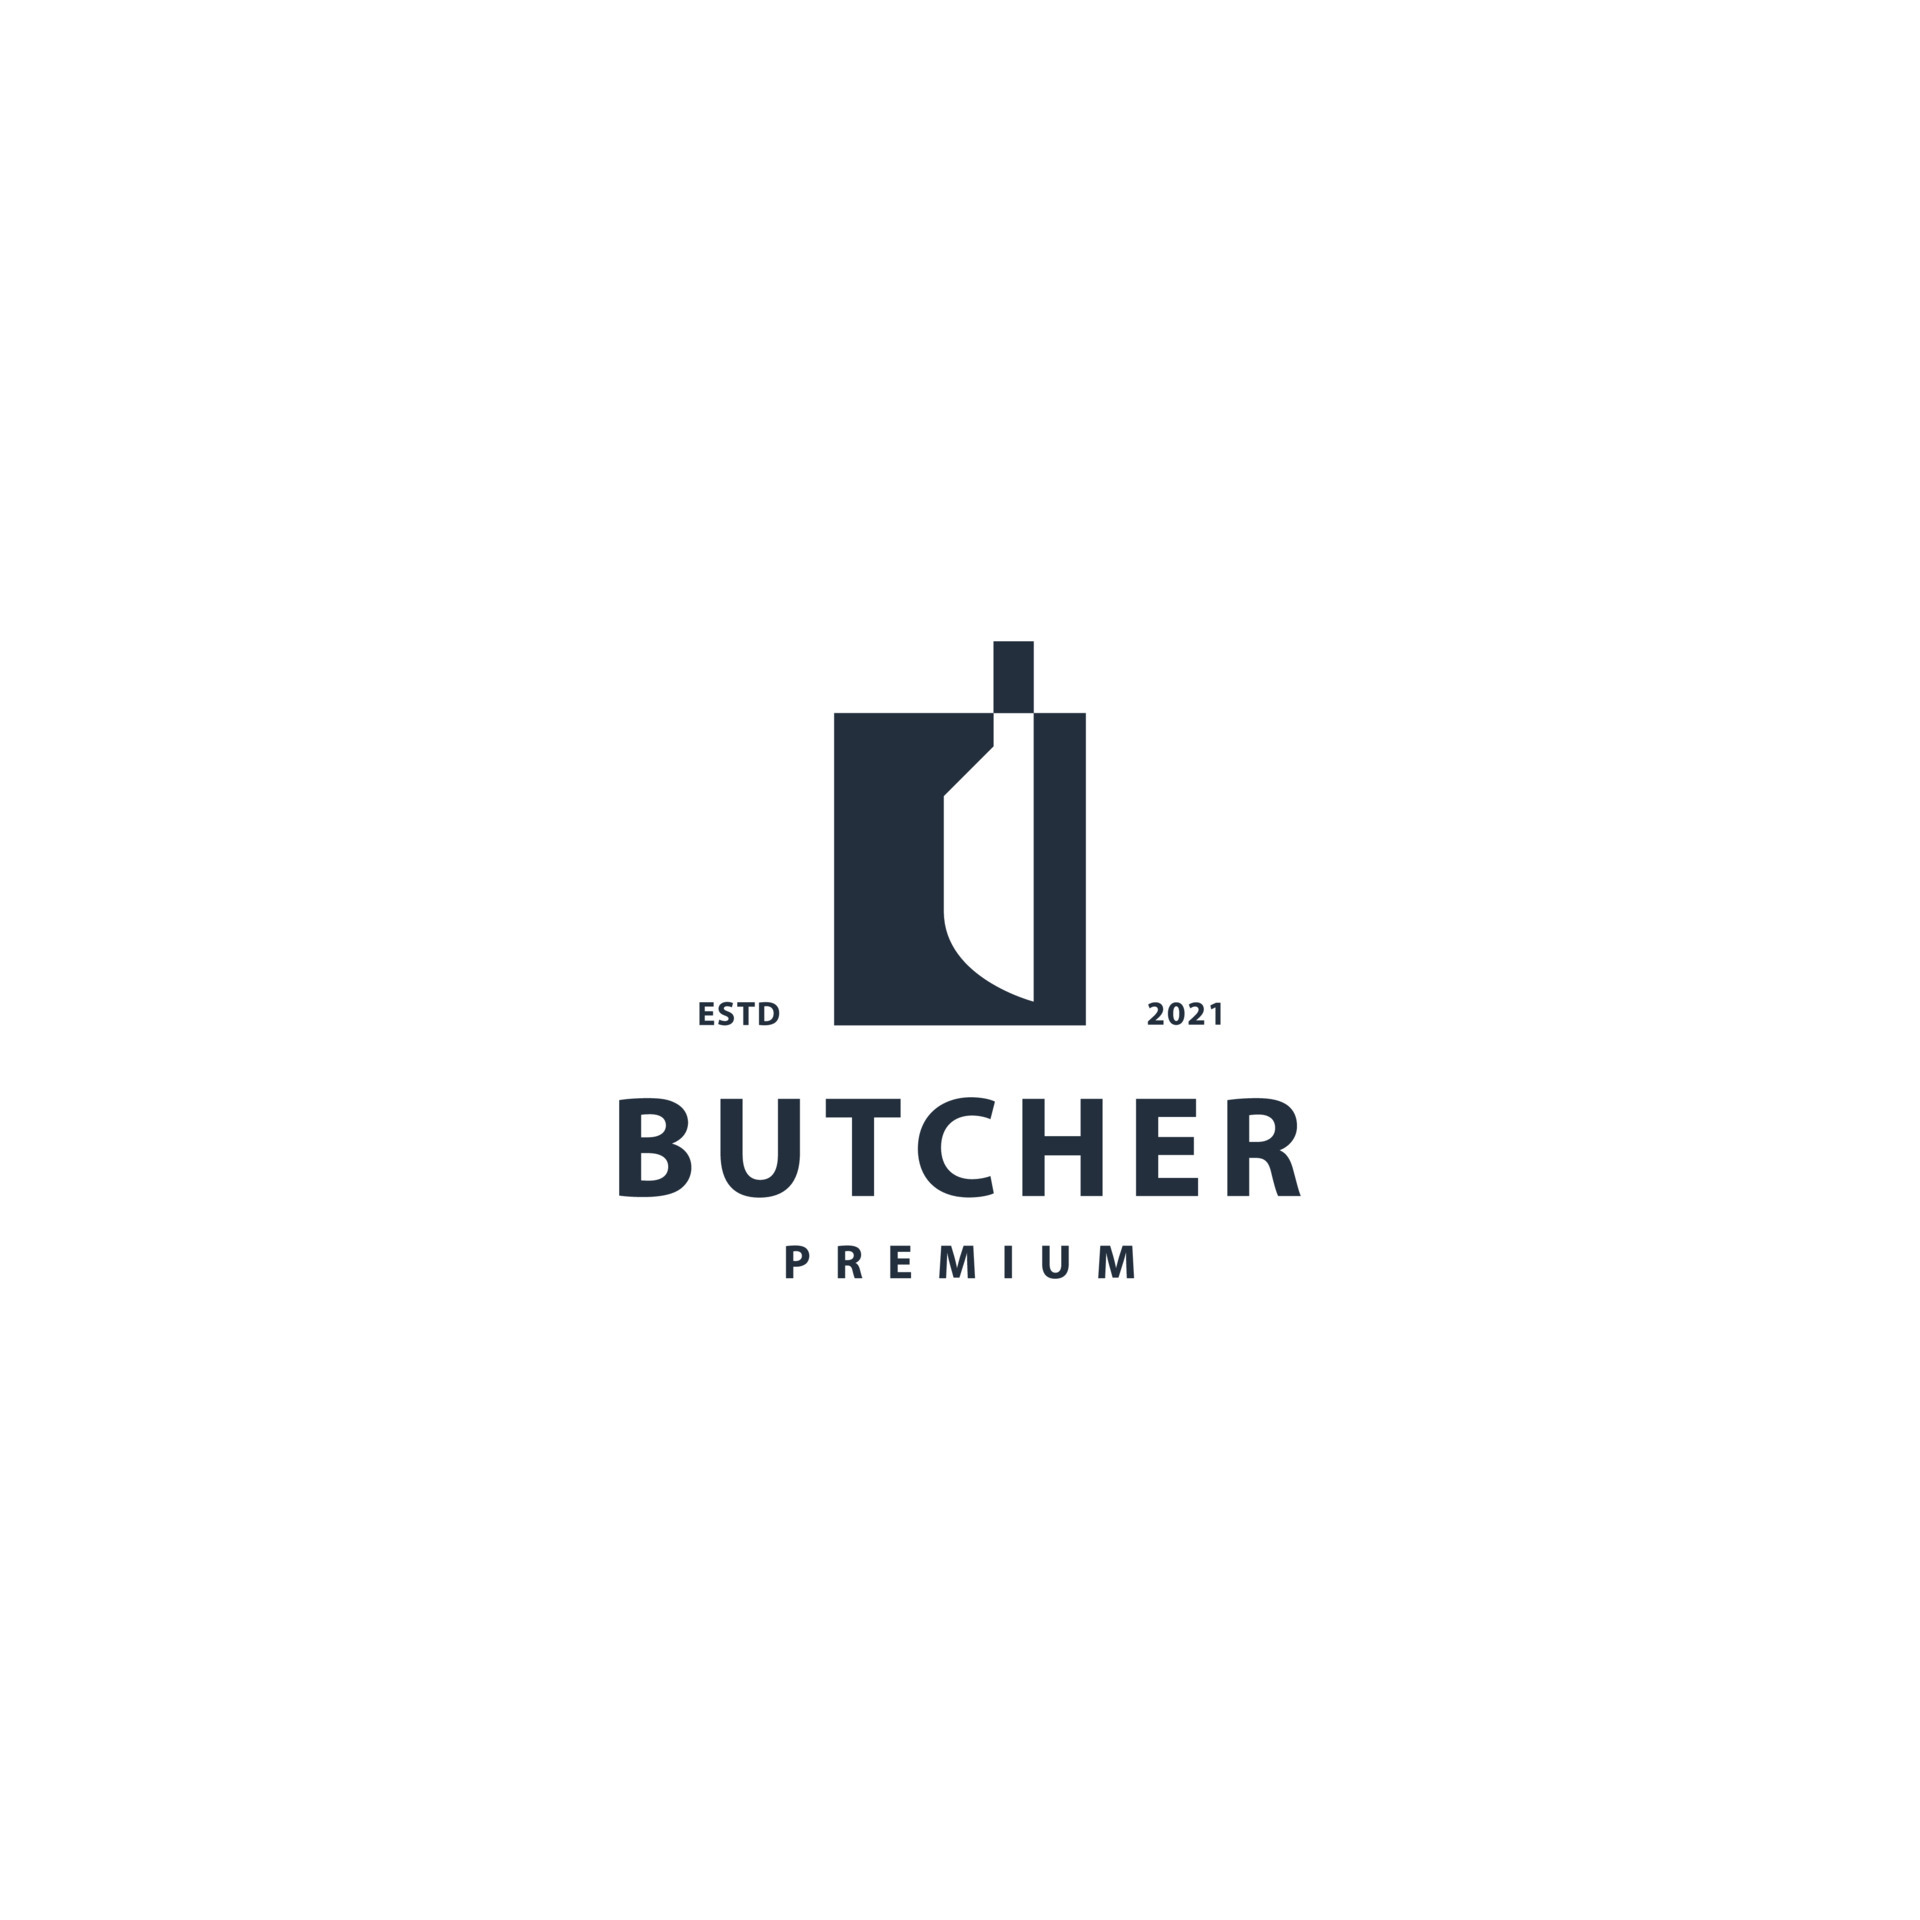 Butcher logo icon sign symbol design 6724475 Vector Art at Vecteezy